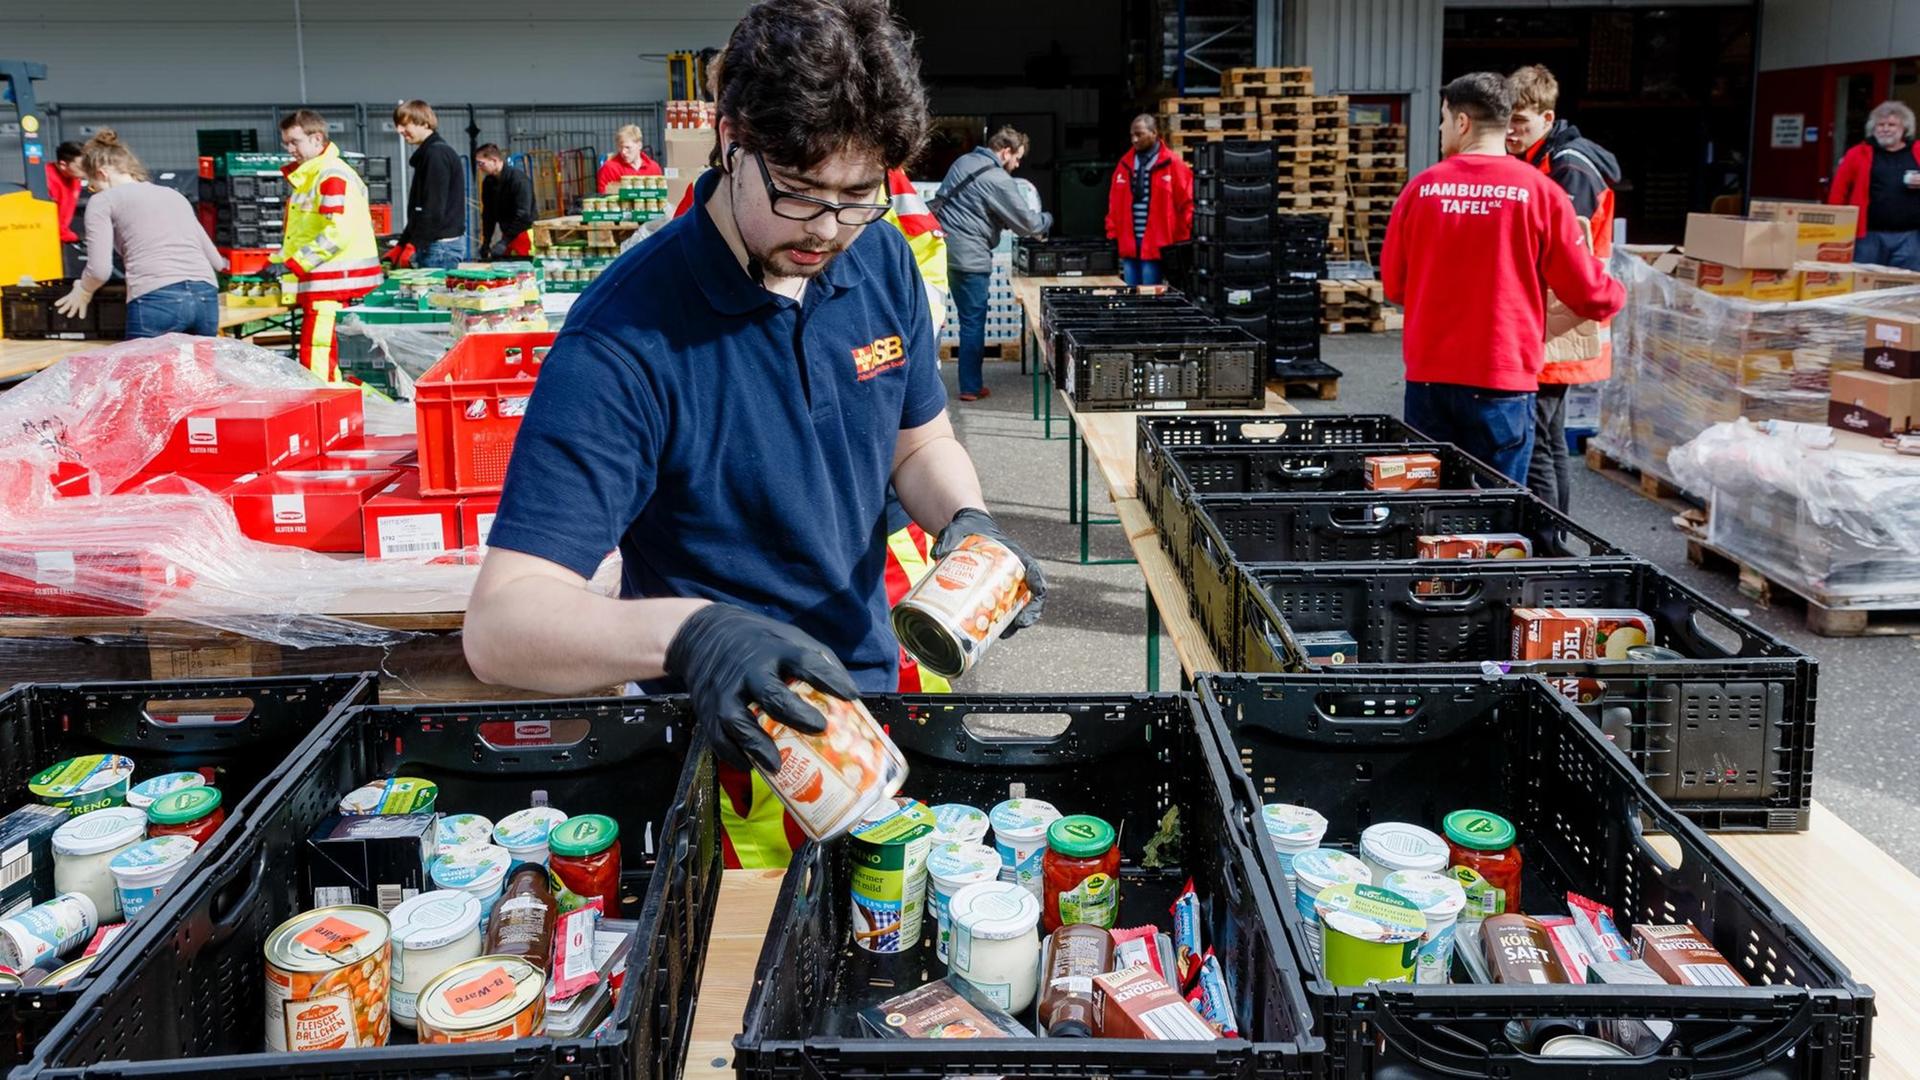 Ehrenamtliche Helfer des Hamburger Tafel und des Arbeiter-Samariter-Bunds packen im Zentraldepot Kisten mit Lebensmitteln für die Ausgabestellen der Tafeln.